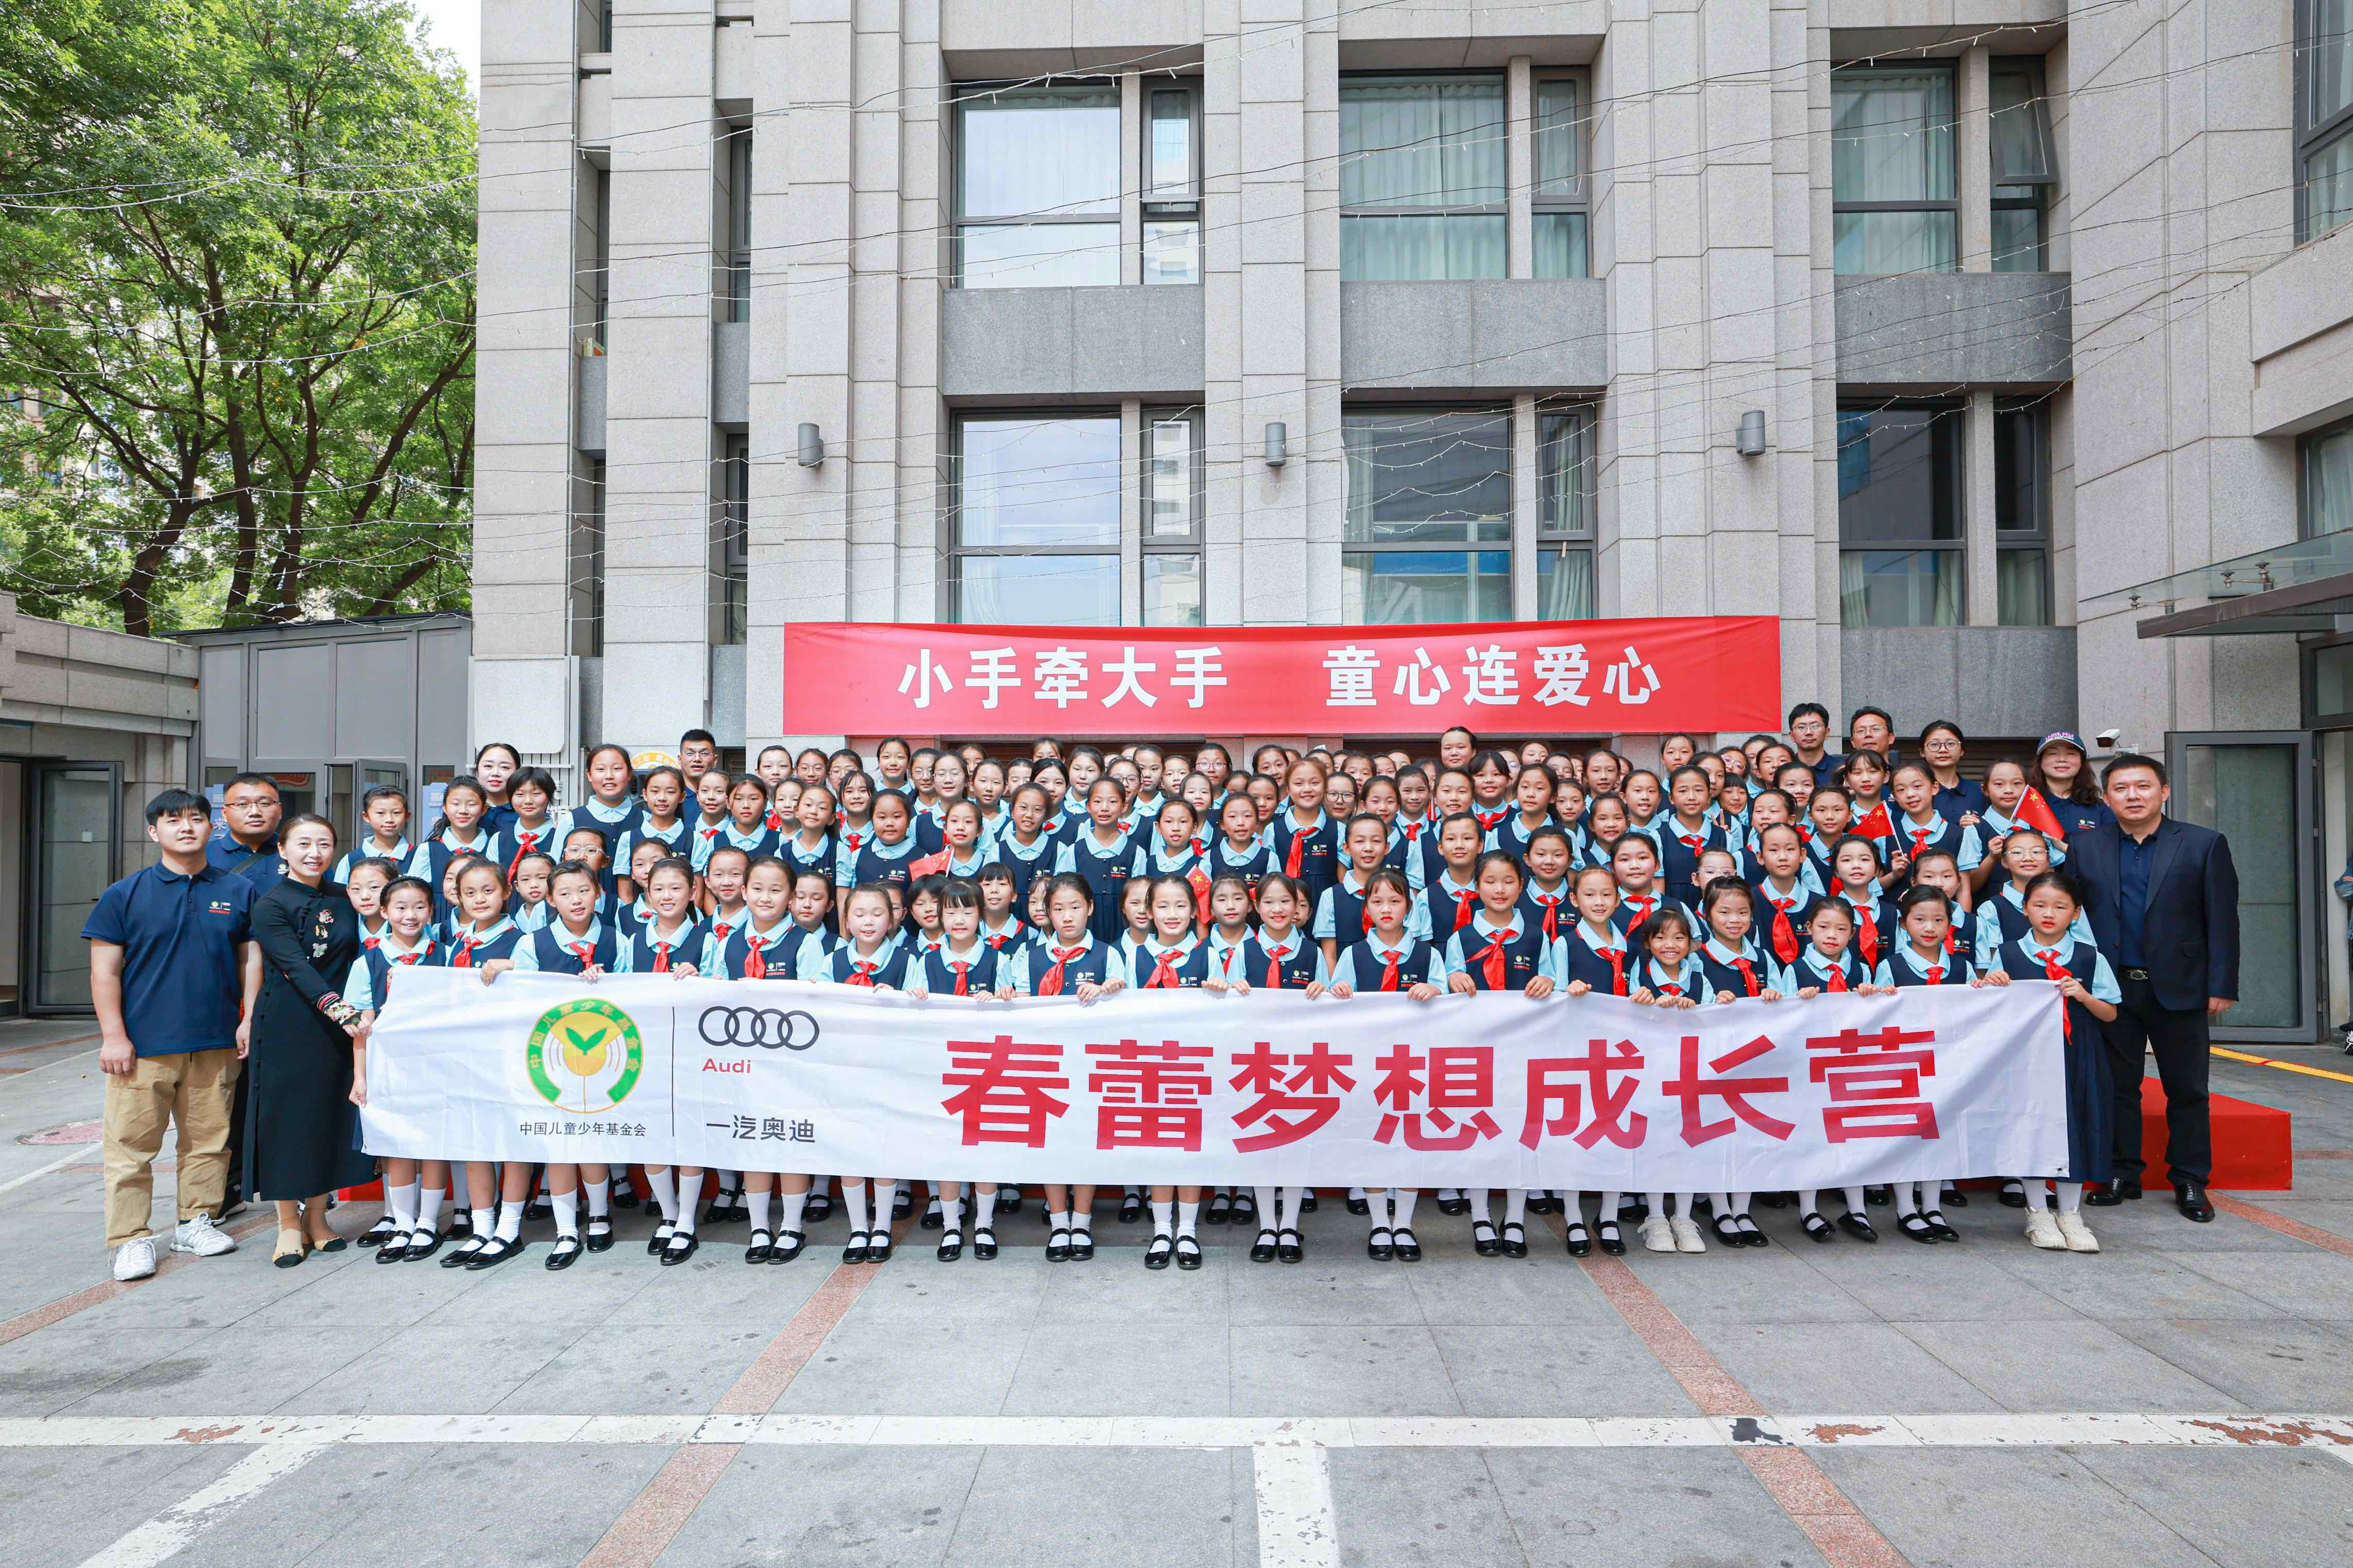 8-来自浙江安吉、河北阜平、辽宁开原的130名春蕾女童共同参与此次研学实践活动